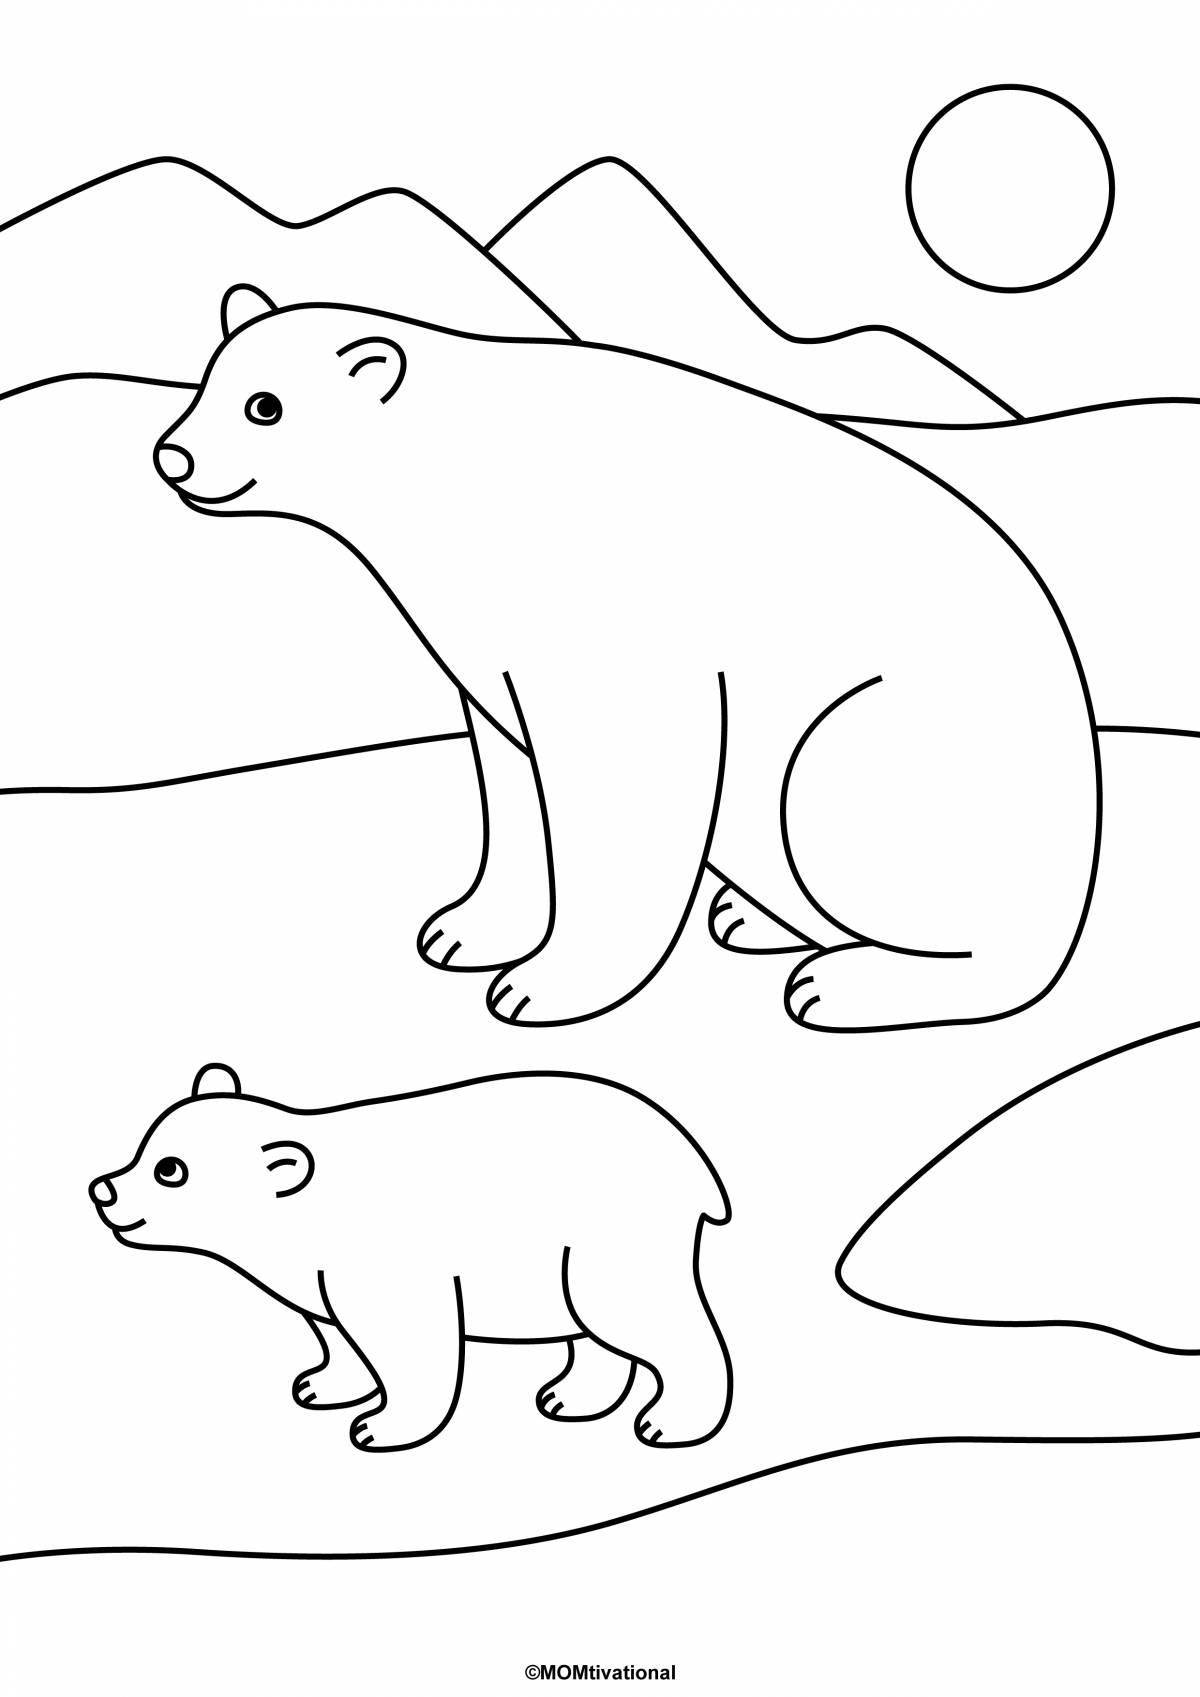 Яркая раскраска белого медведя для детей 3-4 лет